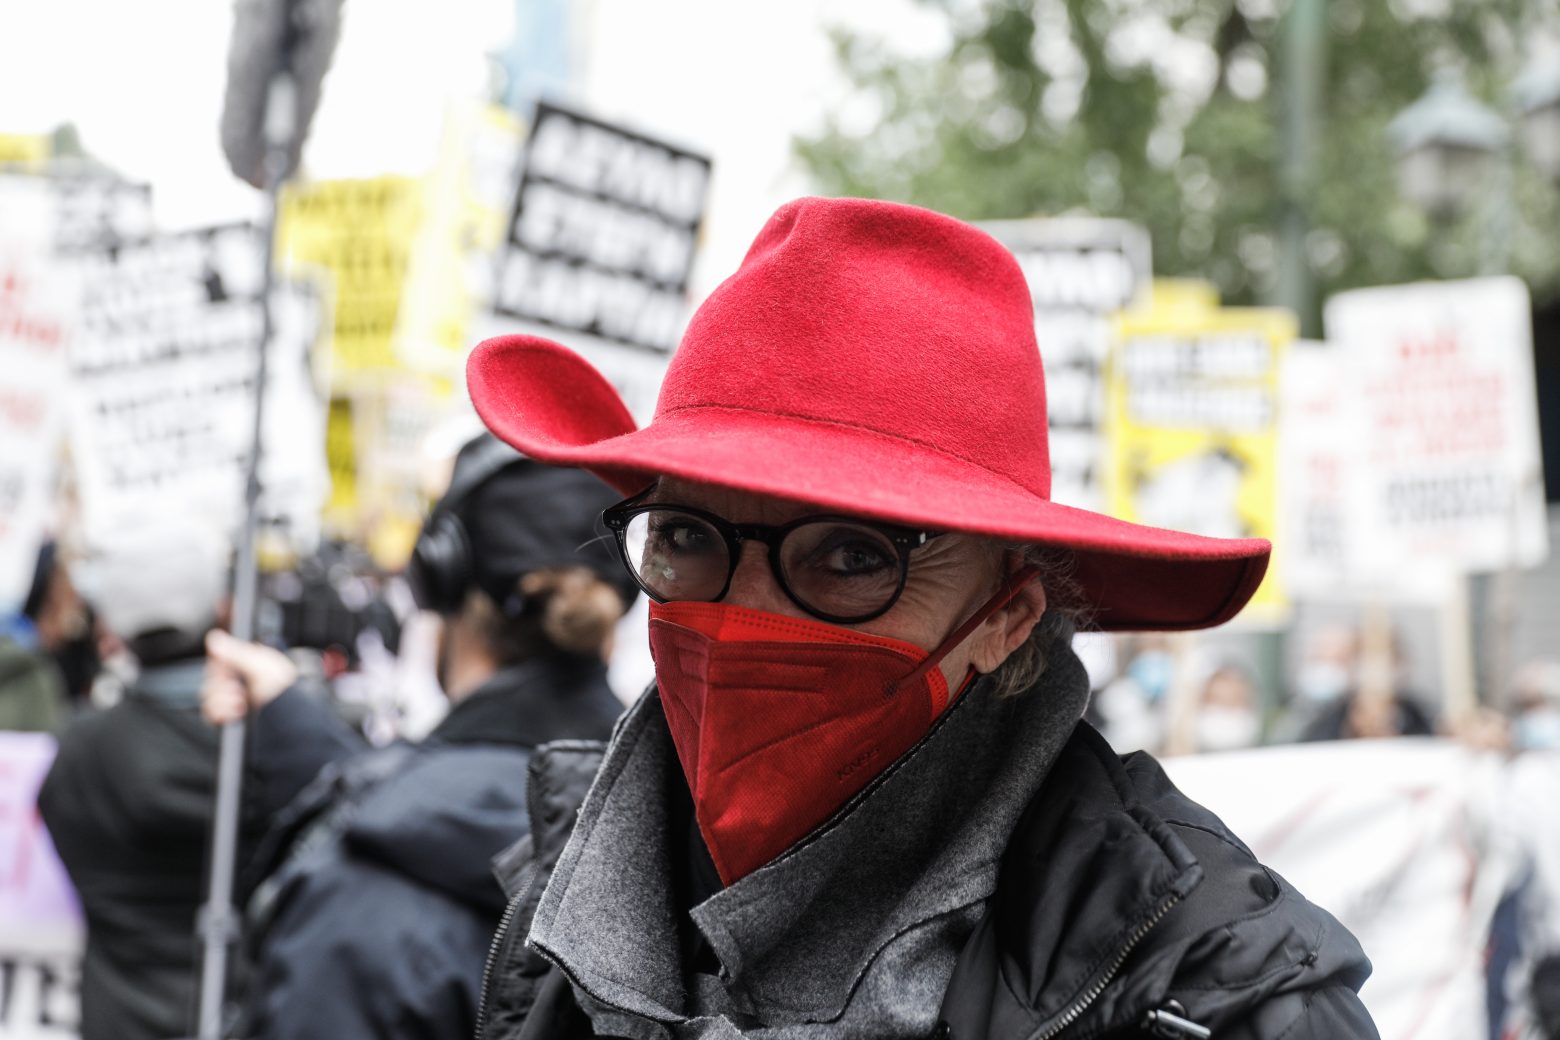 Πολυτεχνείο - Στις εκδηλώσεις για την επέτειο η ολλανδή δημοσιογράφος - Σήμα  κατατεθέν το κόκκινο καπέλο